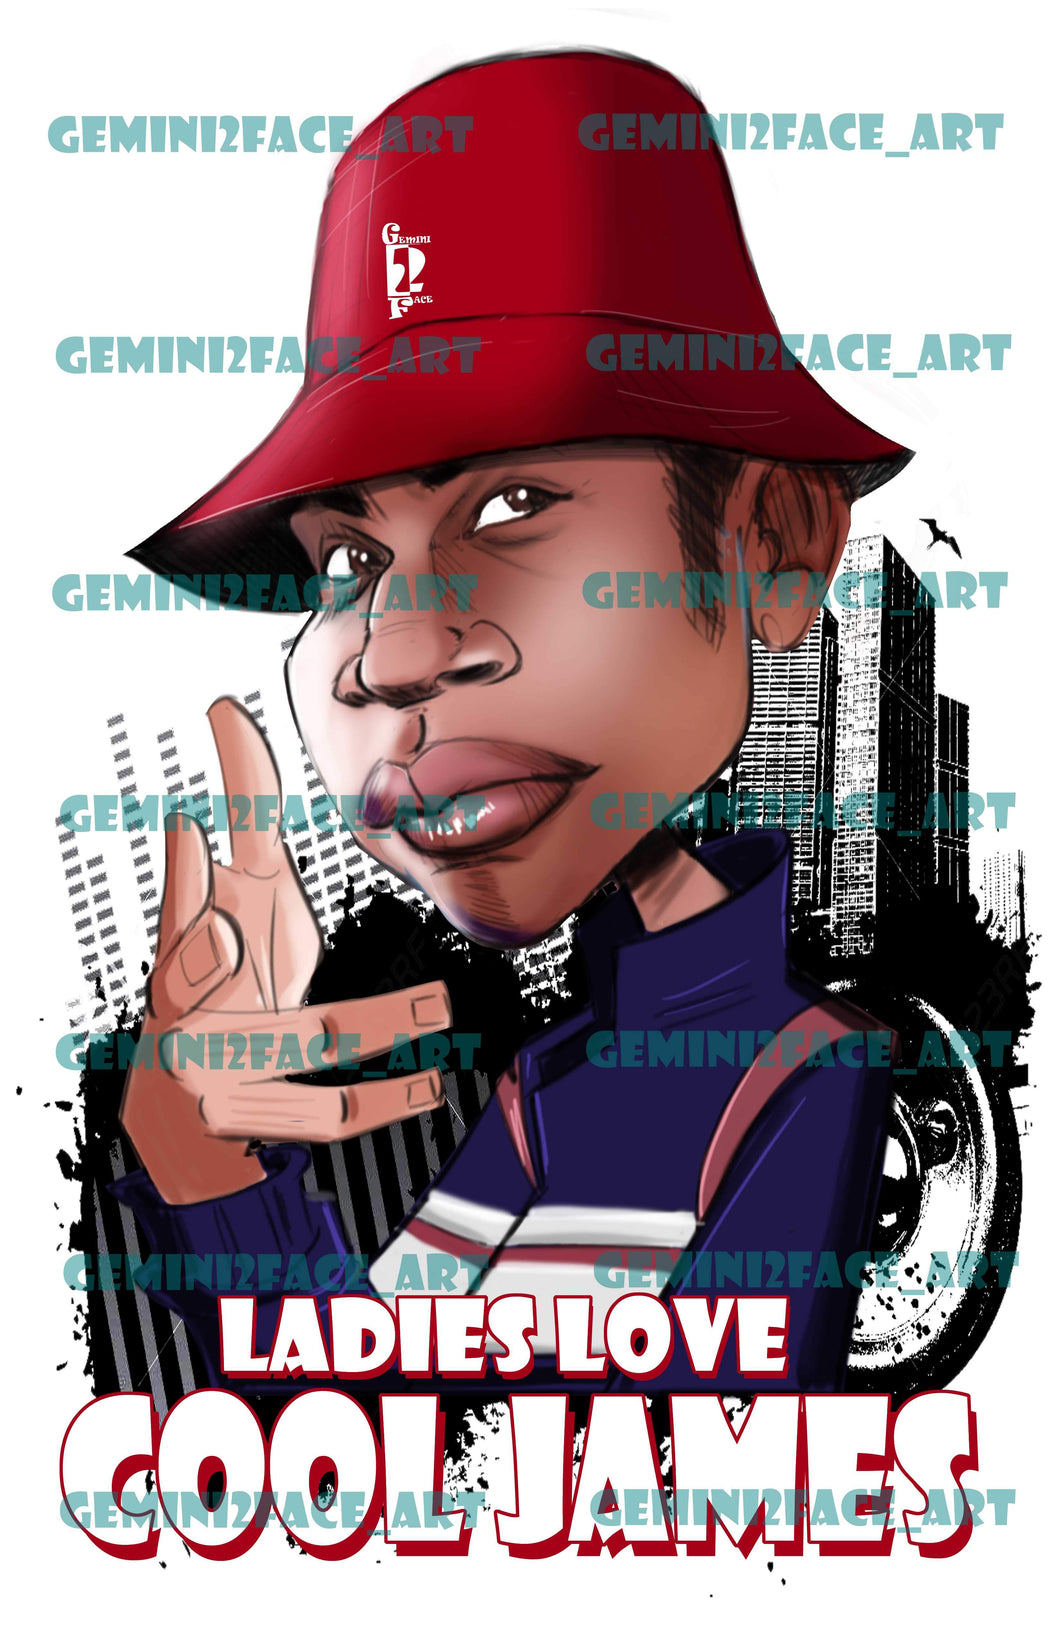 LL Cool J (version 2) PNG PNG File Gemini2face Art E-Store 